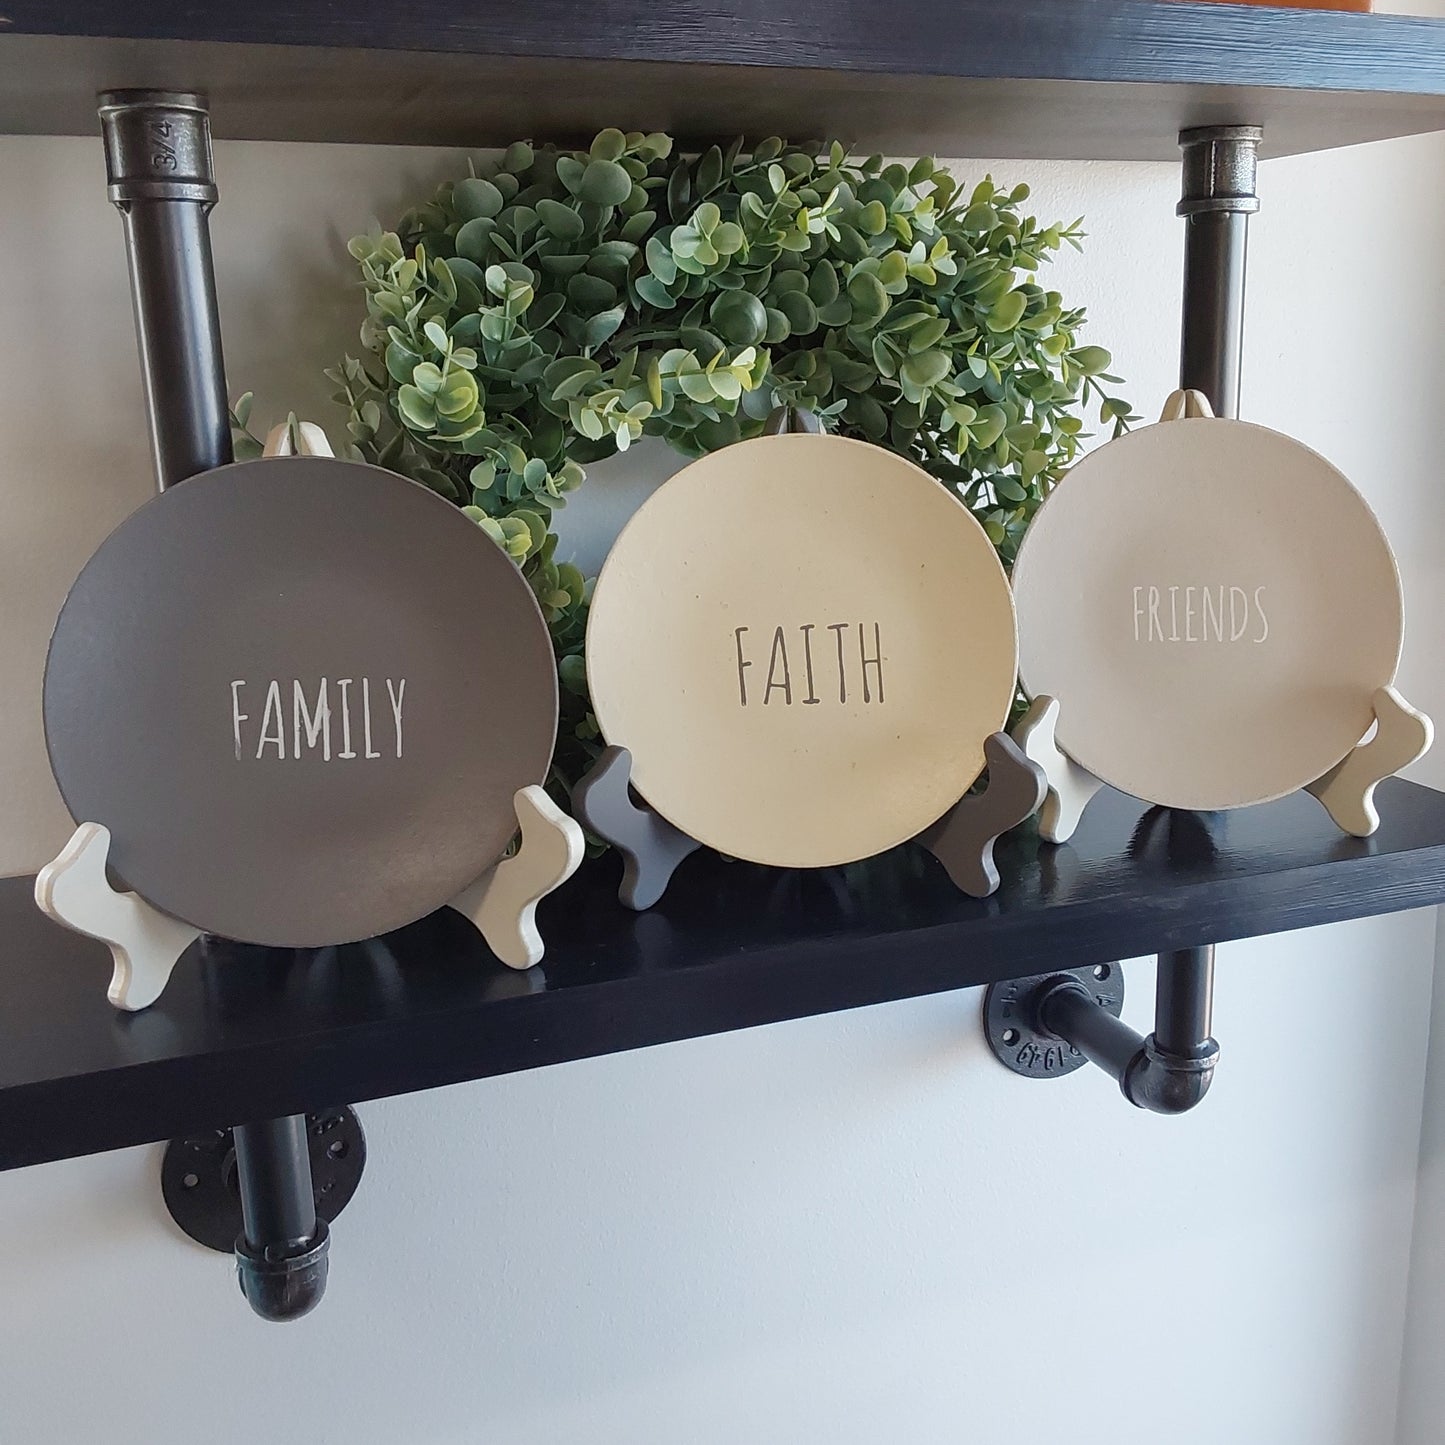 Faith Family Friends Plate Set